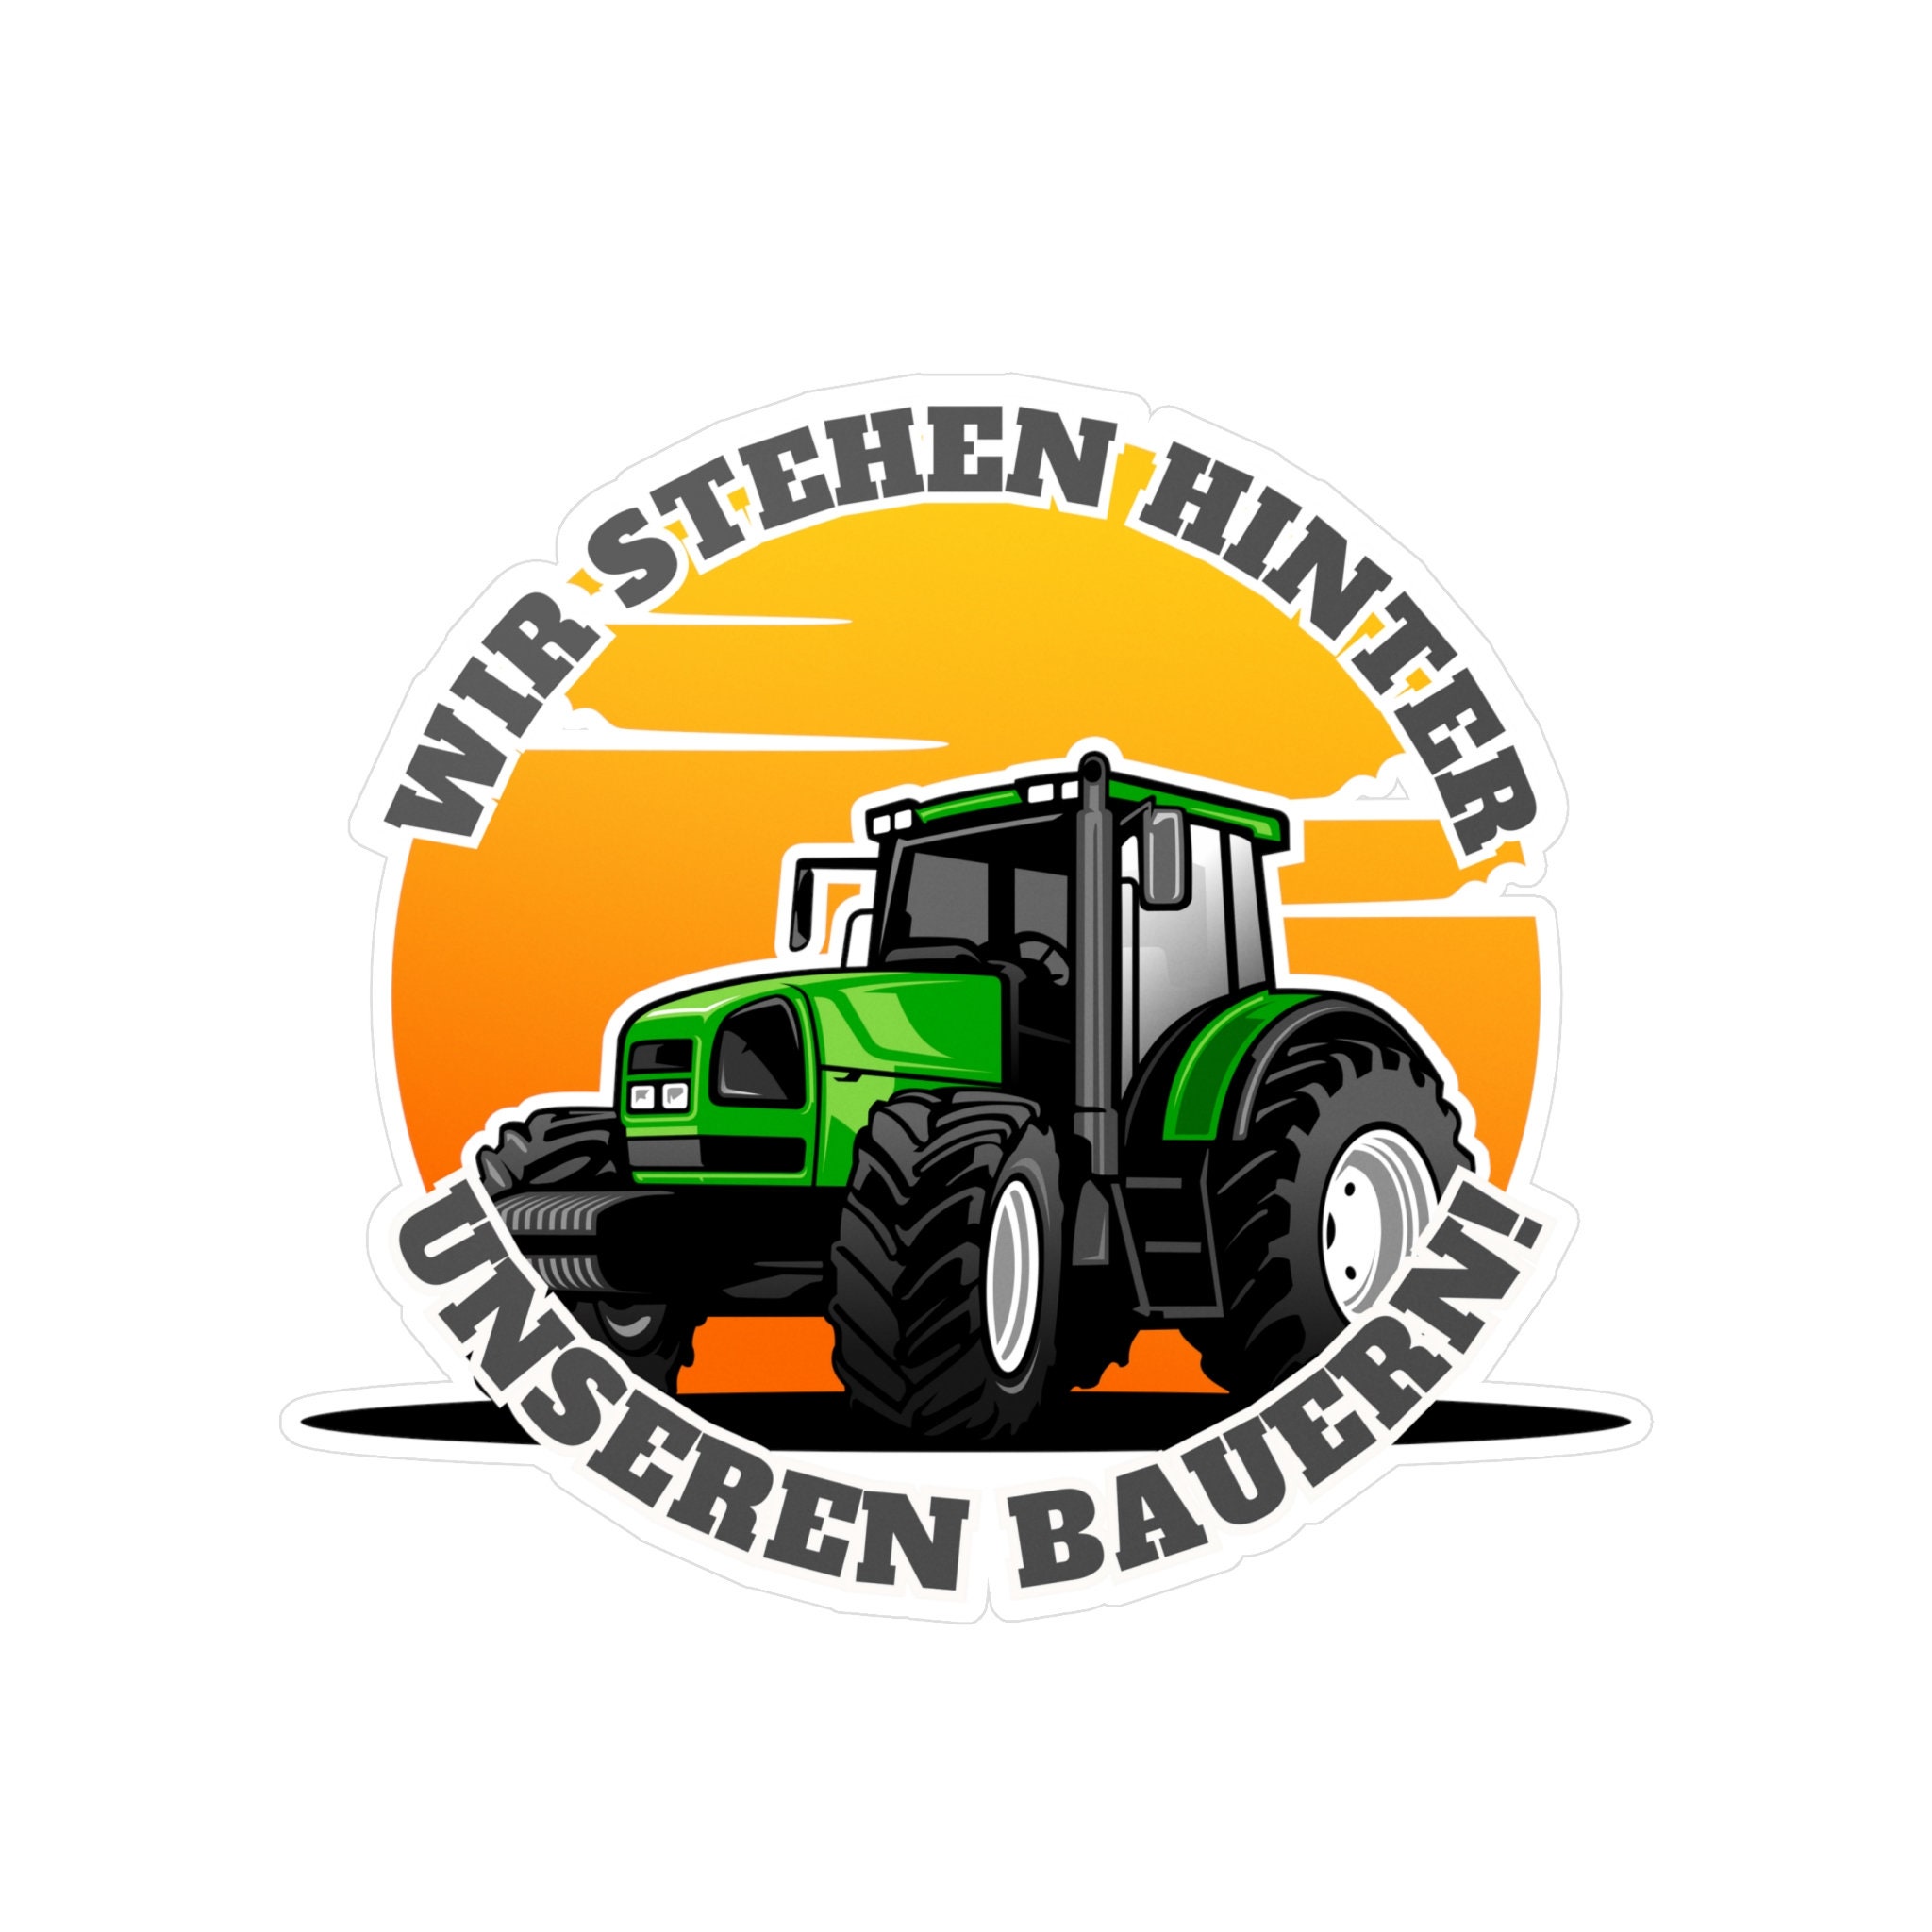 ⭐️ Auto Aufkleber Landvolkbewegung Protest Demo Regierung Landwirte Bauer  ⭐️ 7x10 cm ⭐️ Premium Sticker fürs Motorrrad Roller Mofa Bus Traktor  Caravan